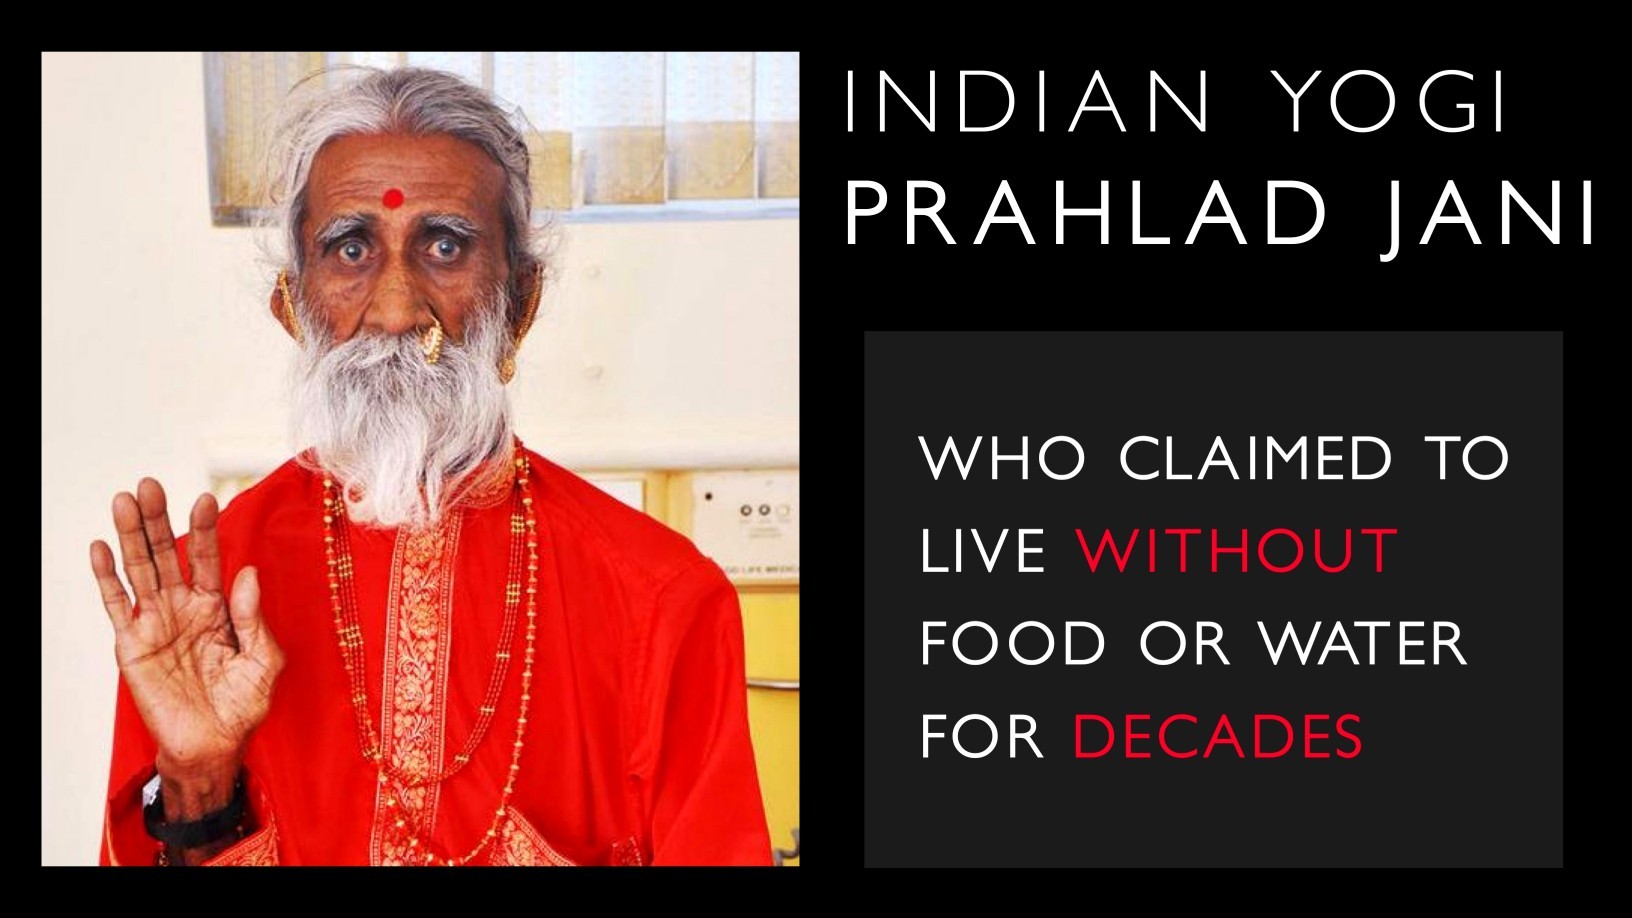 Prahlad Jani - De Indiase yogi die beweerde tientallen jaren zonder voedsel of water te leven 1